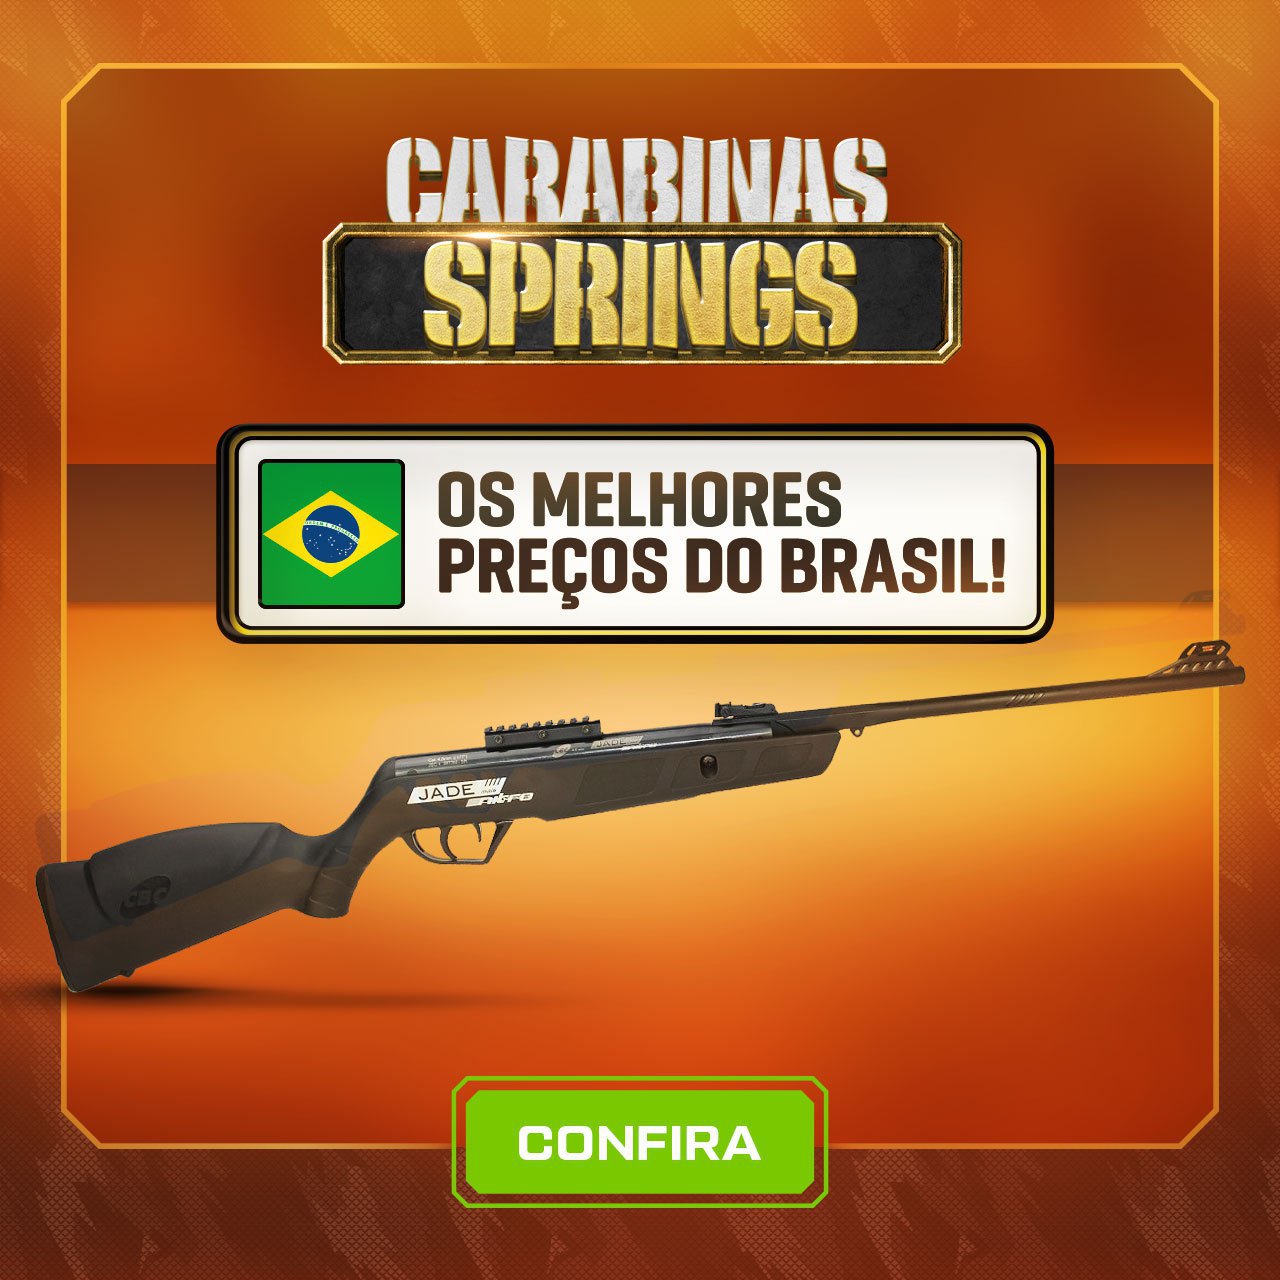 Carabinas Springs - Os Melhores preços do Brasil!